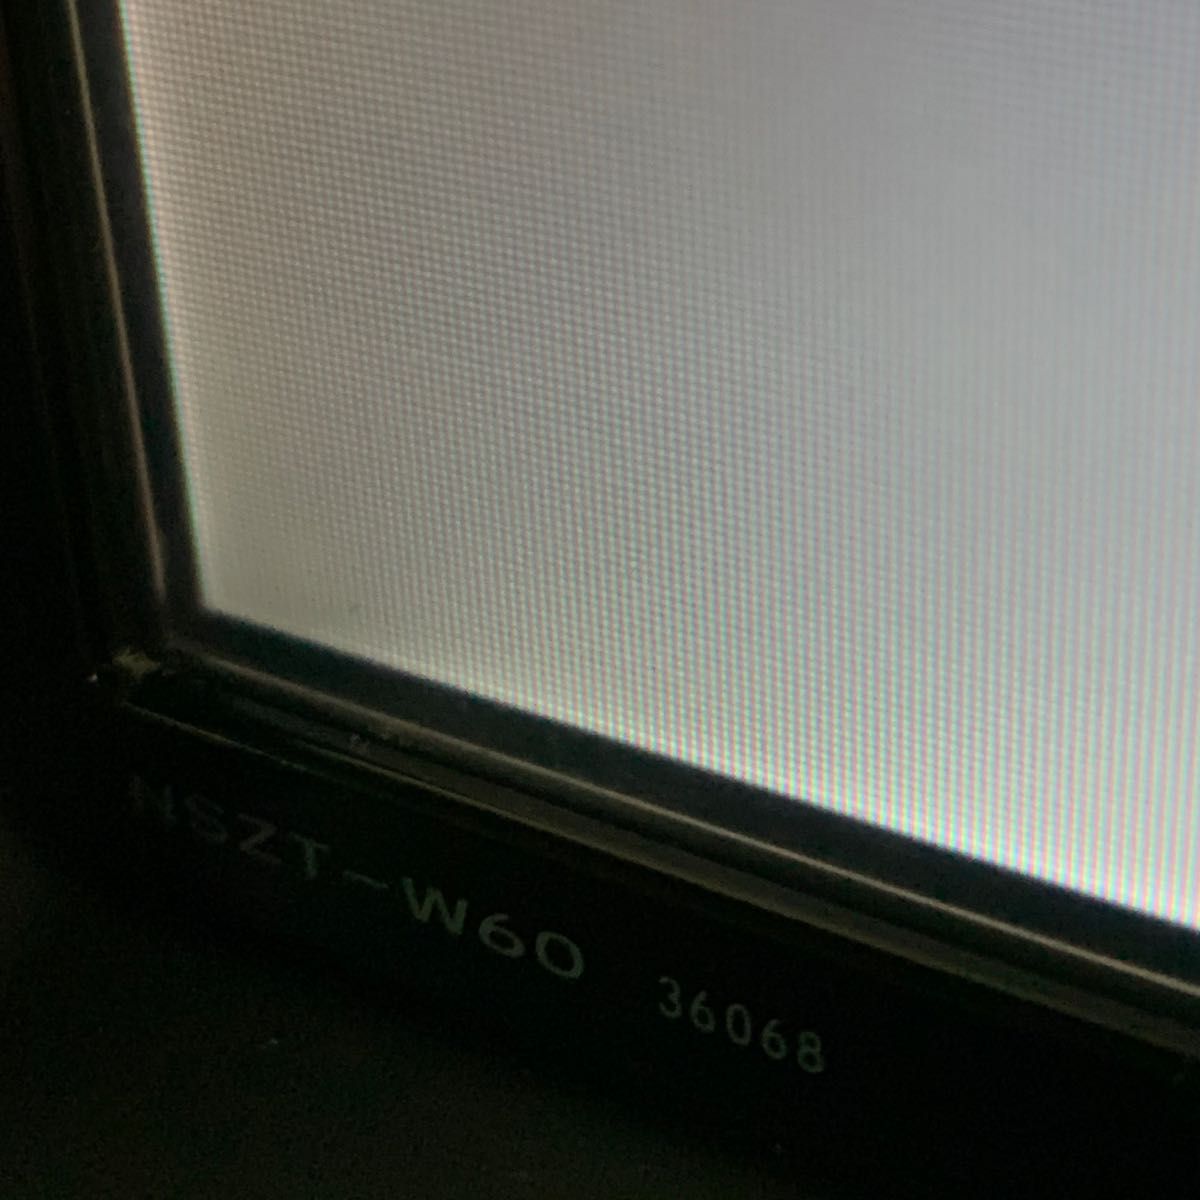 NSZT-W60ナビSD 2015年度 秋版